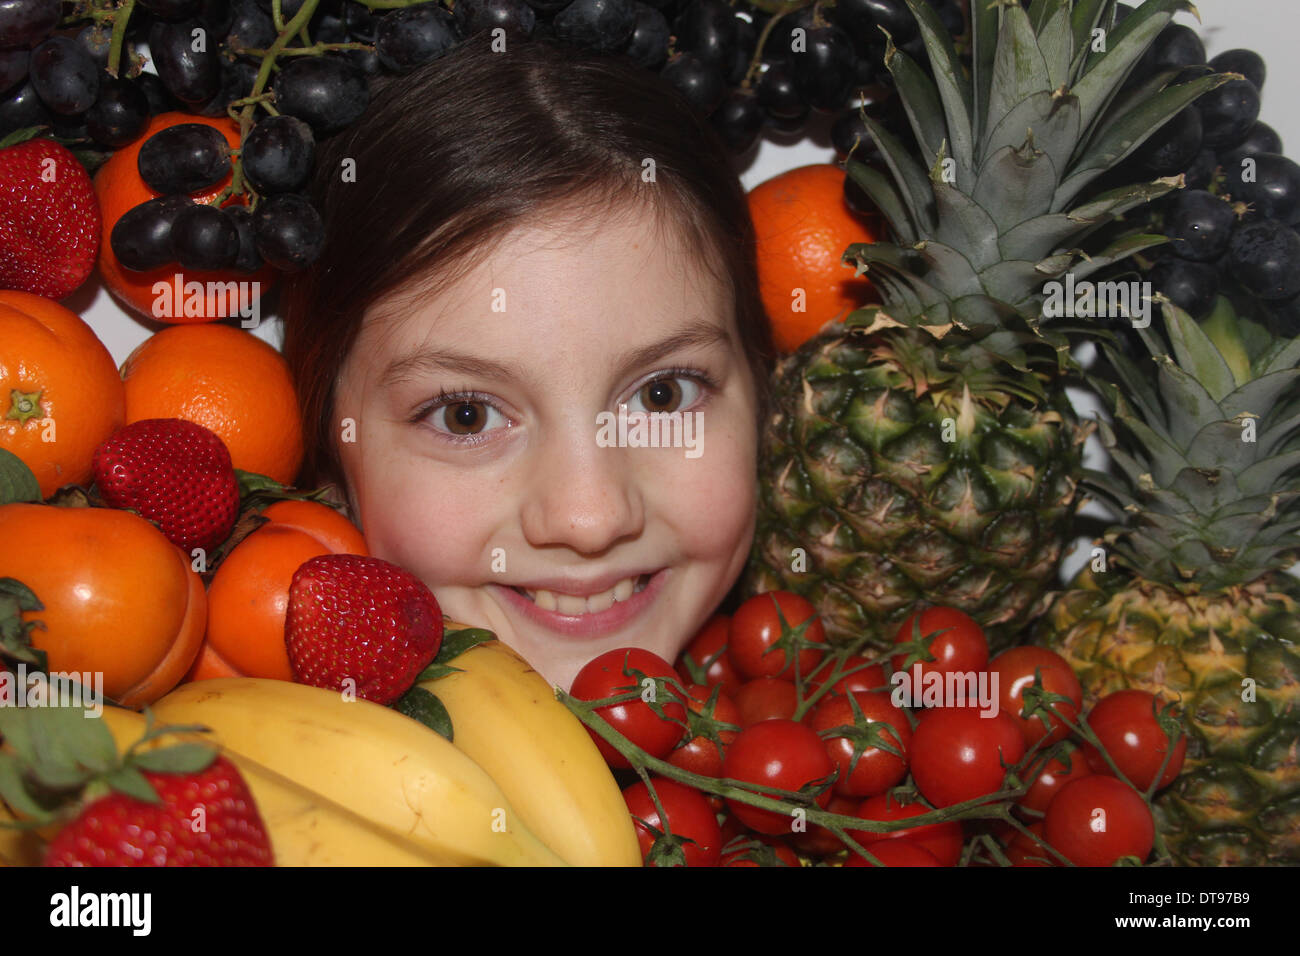 Los jóvenes caucásicos cara de la niña rodeada de frutales y hortalizas, cinco al día, Inglaterra, Reino Unido. Foto de stock